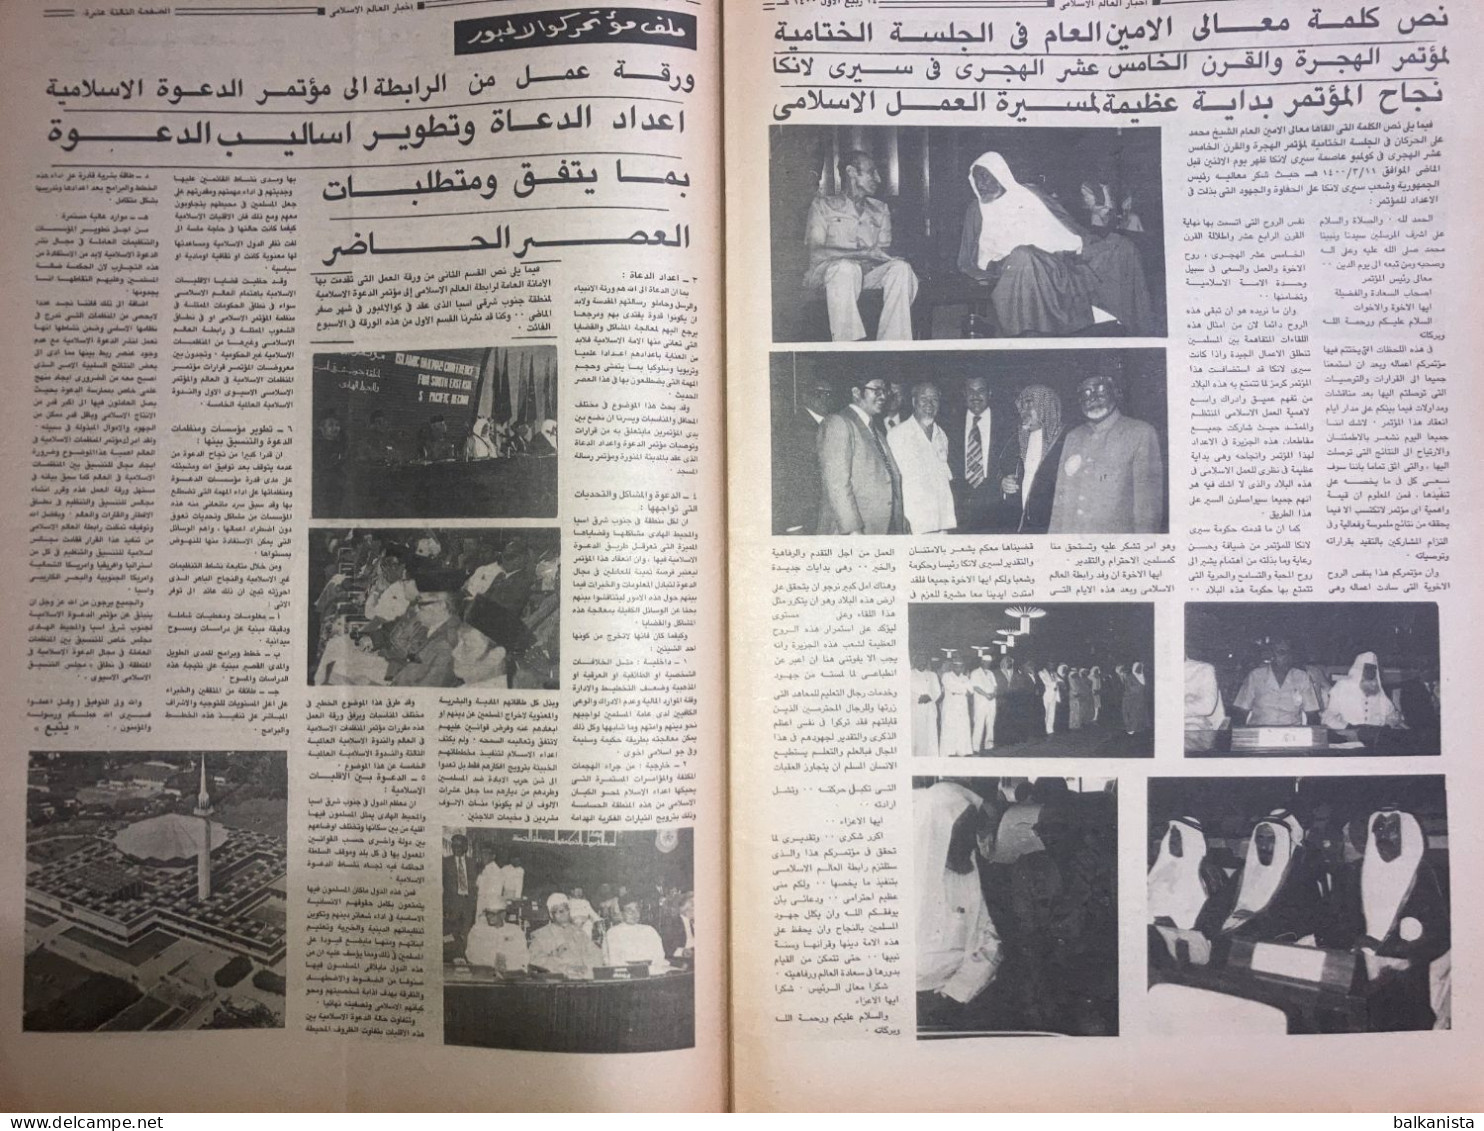 Saudi Arabia Akhbar al-Alam al-Islami Newspaper 11 February 1980